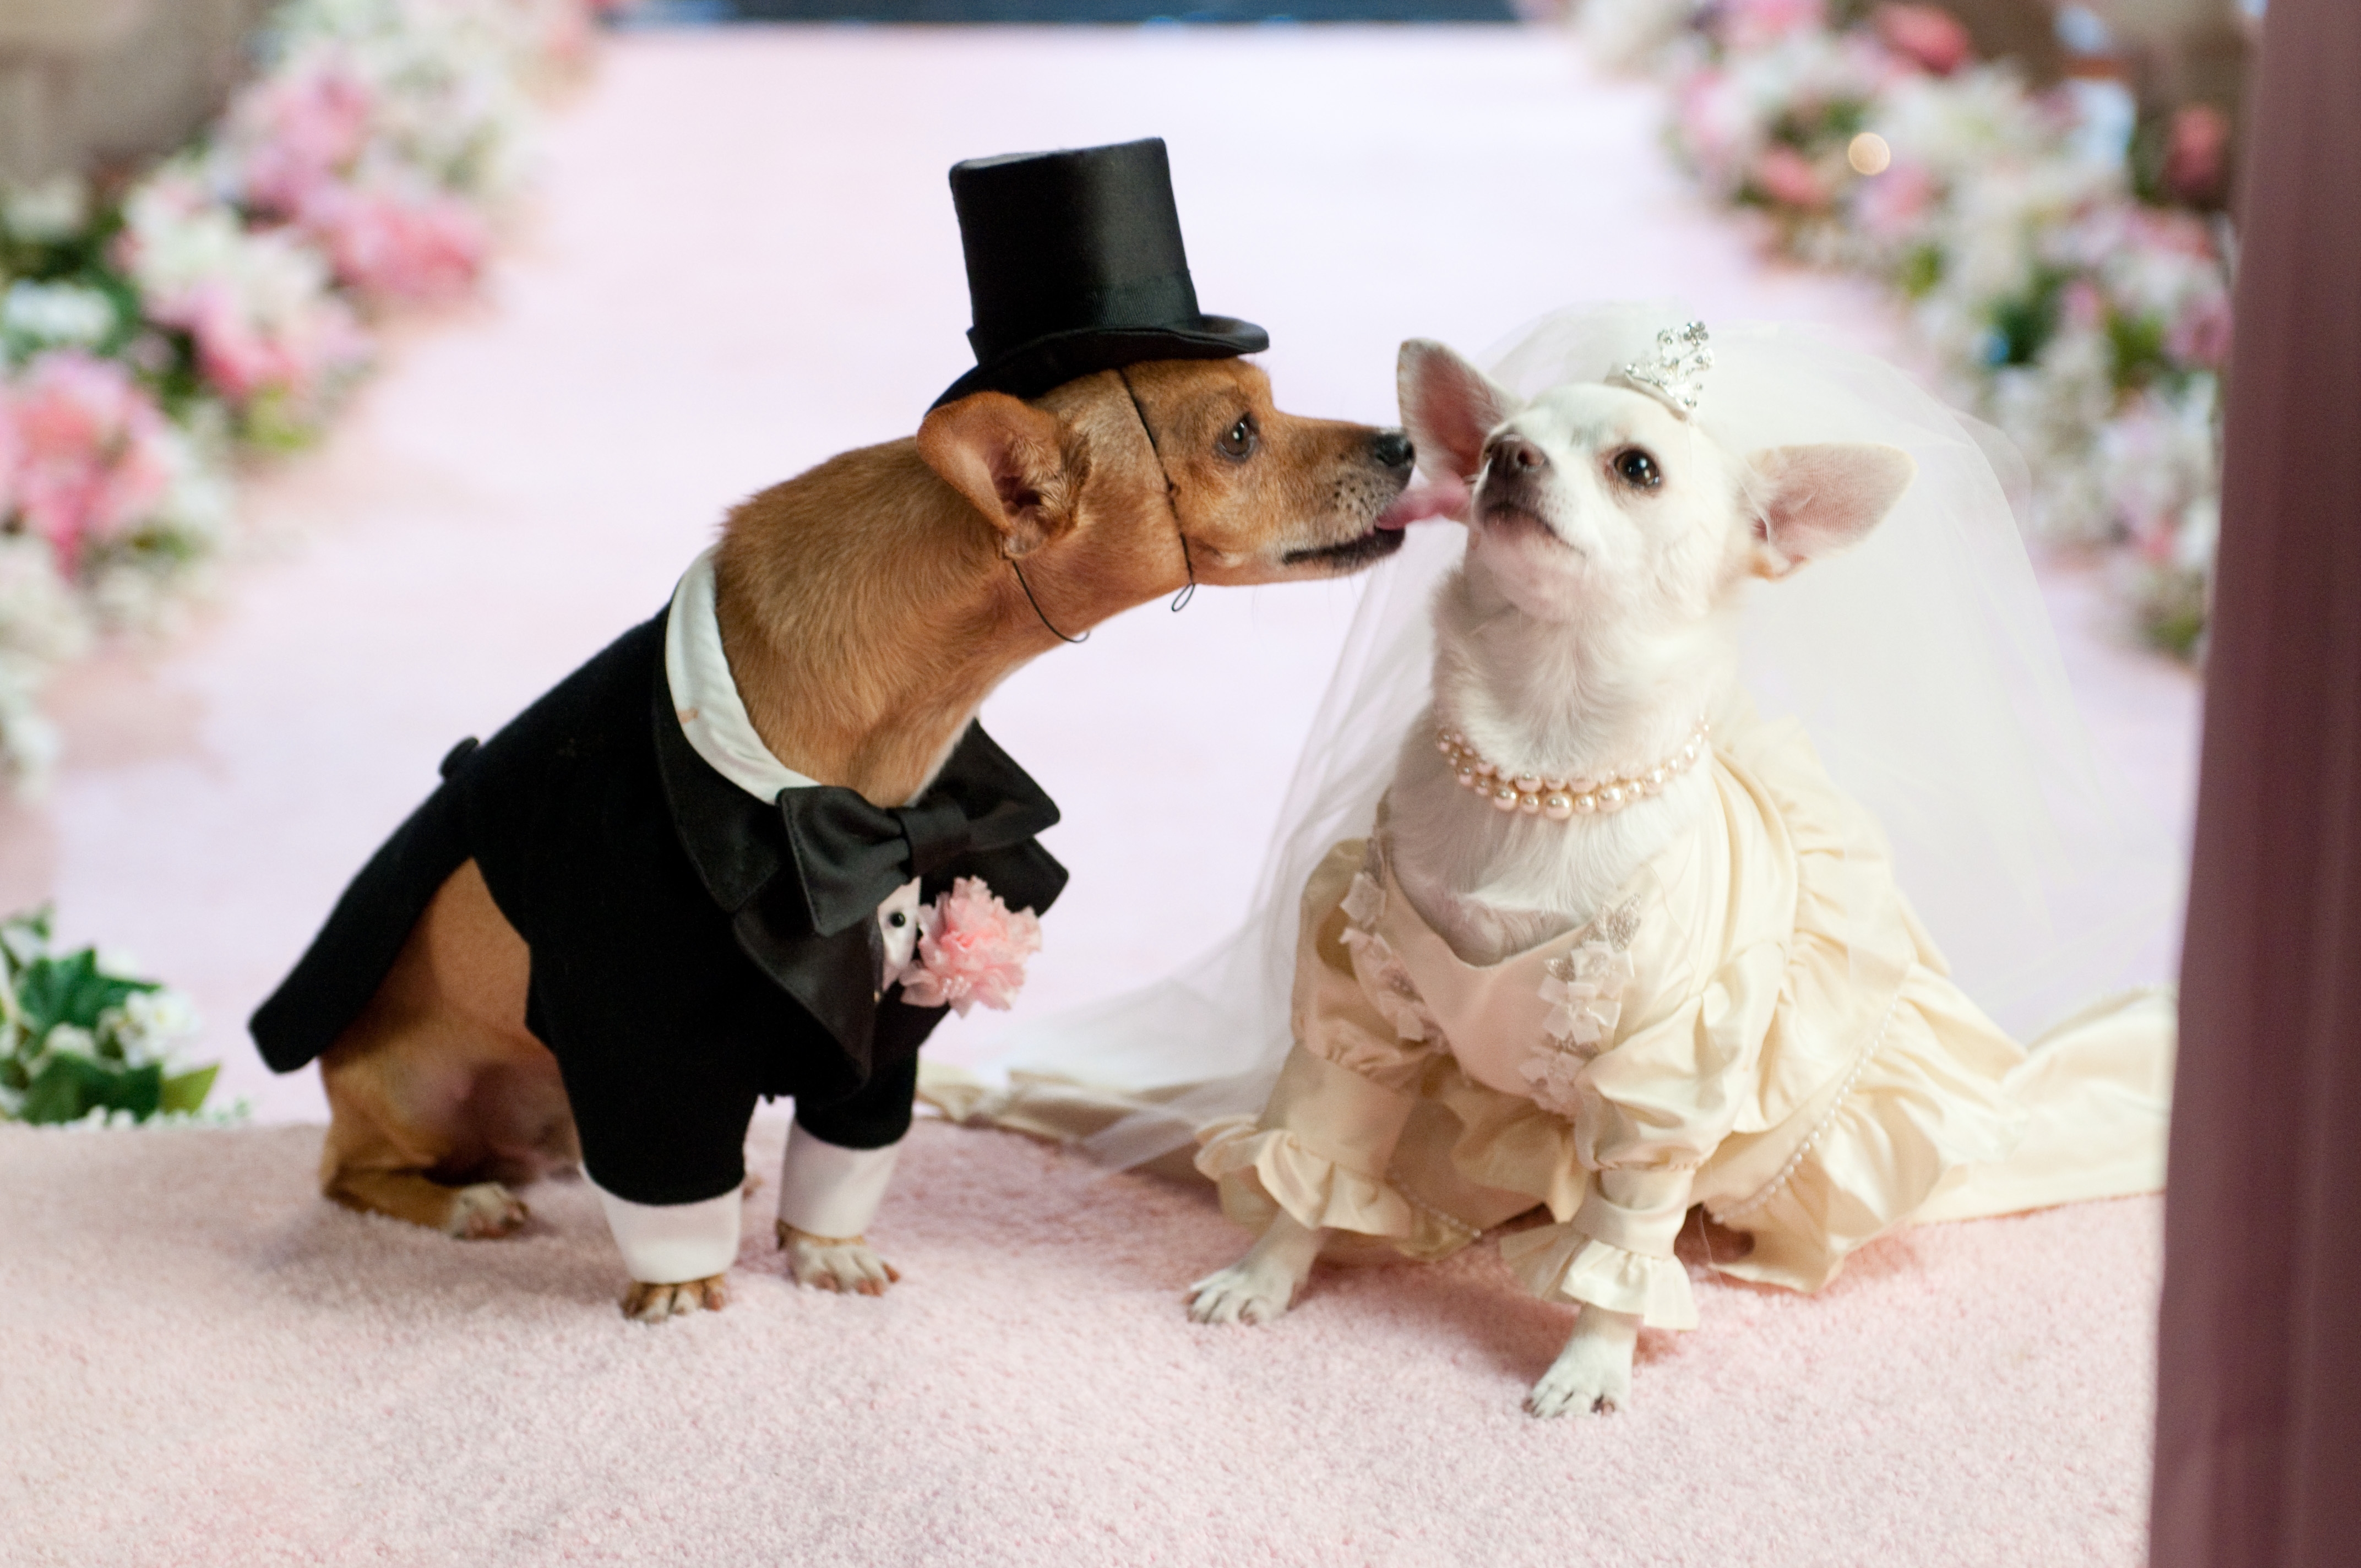 Скачать обои бесплатно Свадьба, Собаки, Костюм, Животные, Пара картинка на рабочий стол ПК